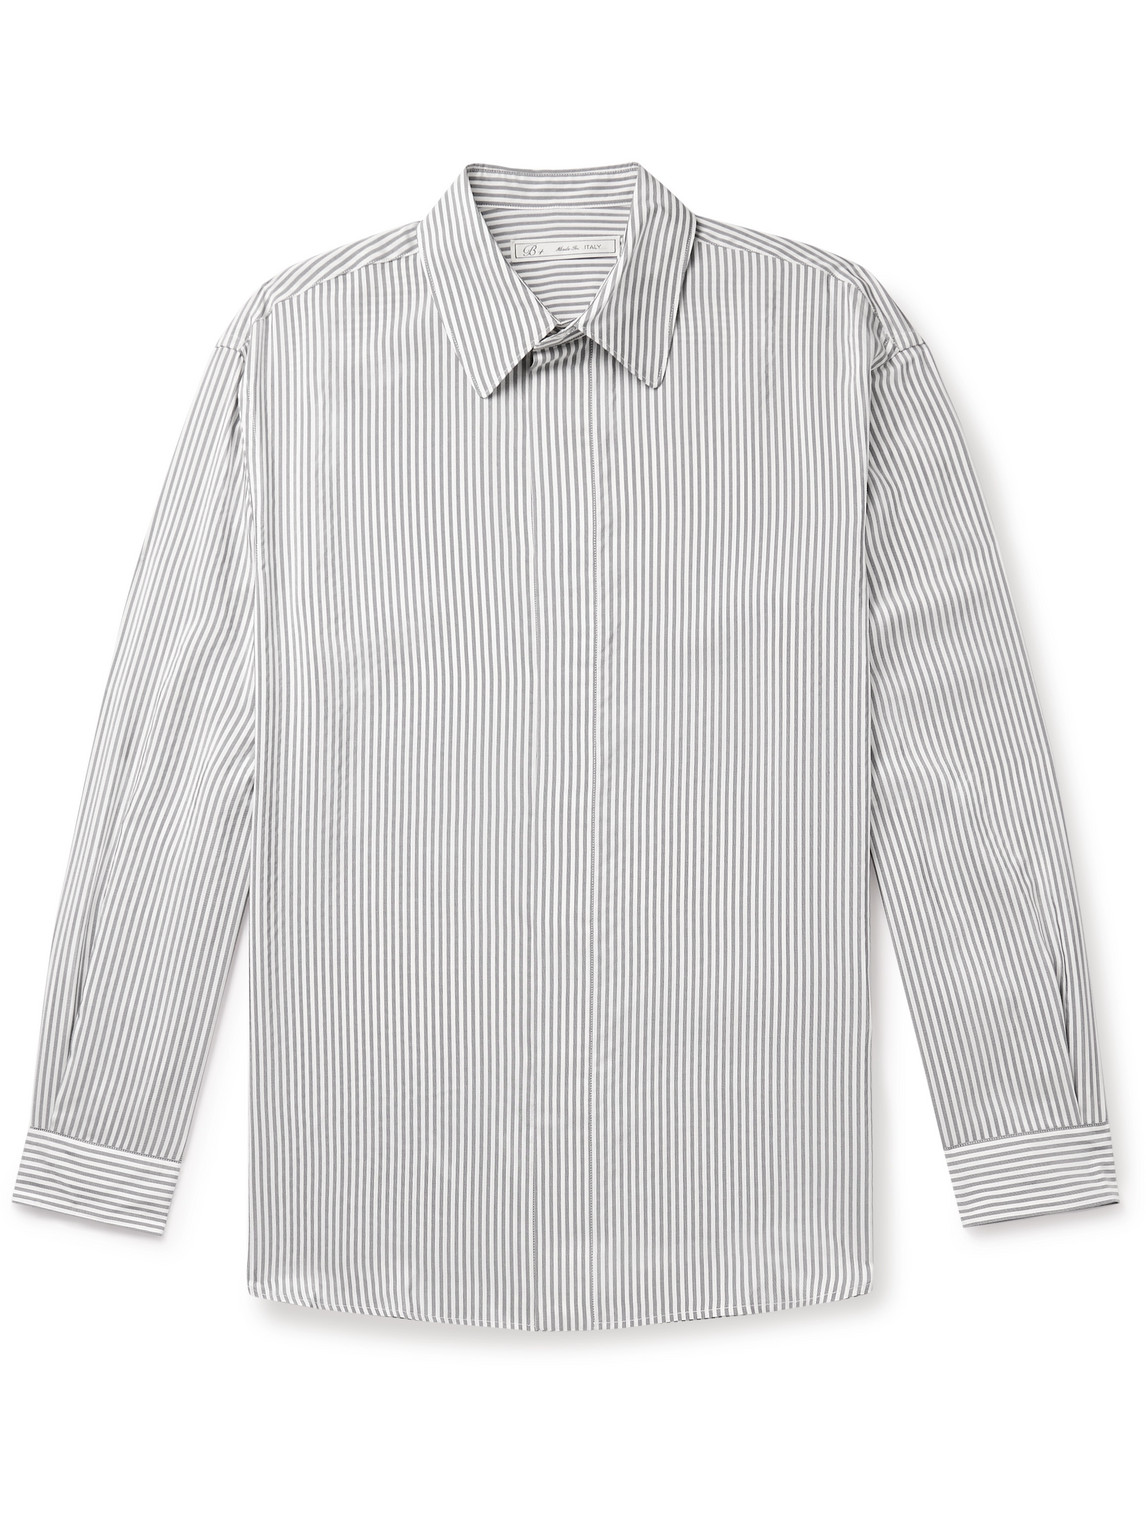 Umit Benan B+ Striped Silk Shirt In Grey